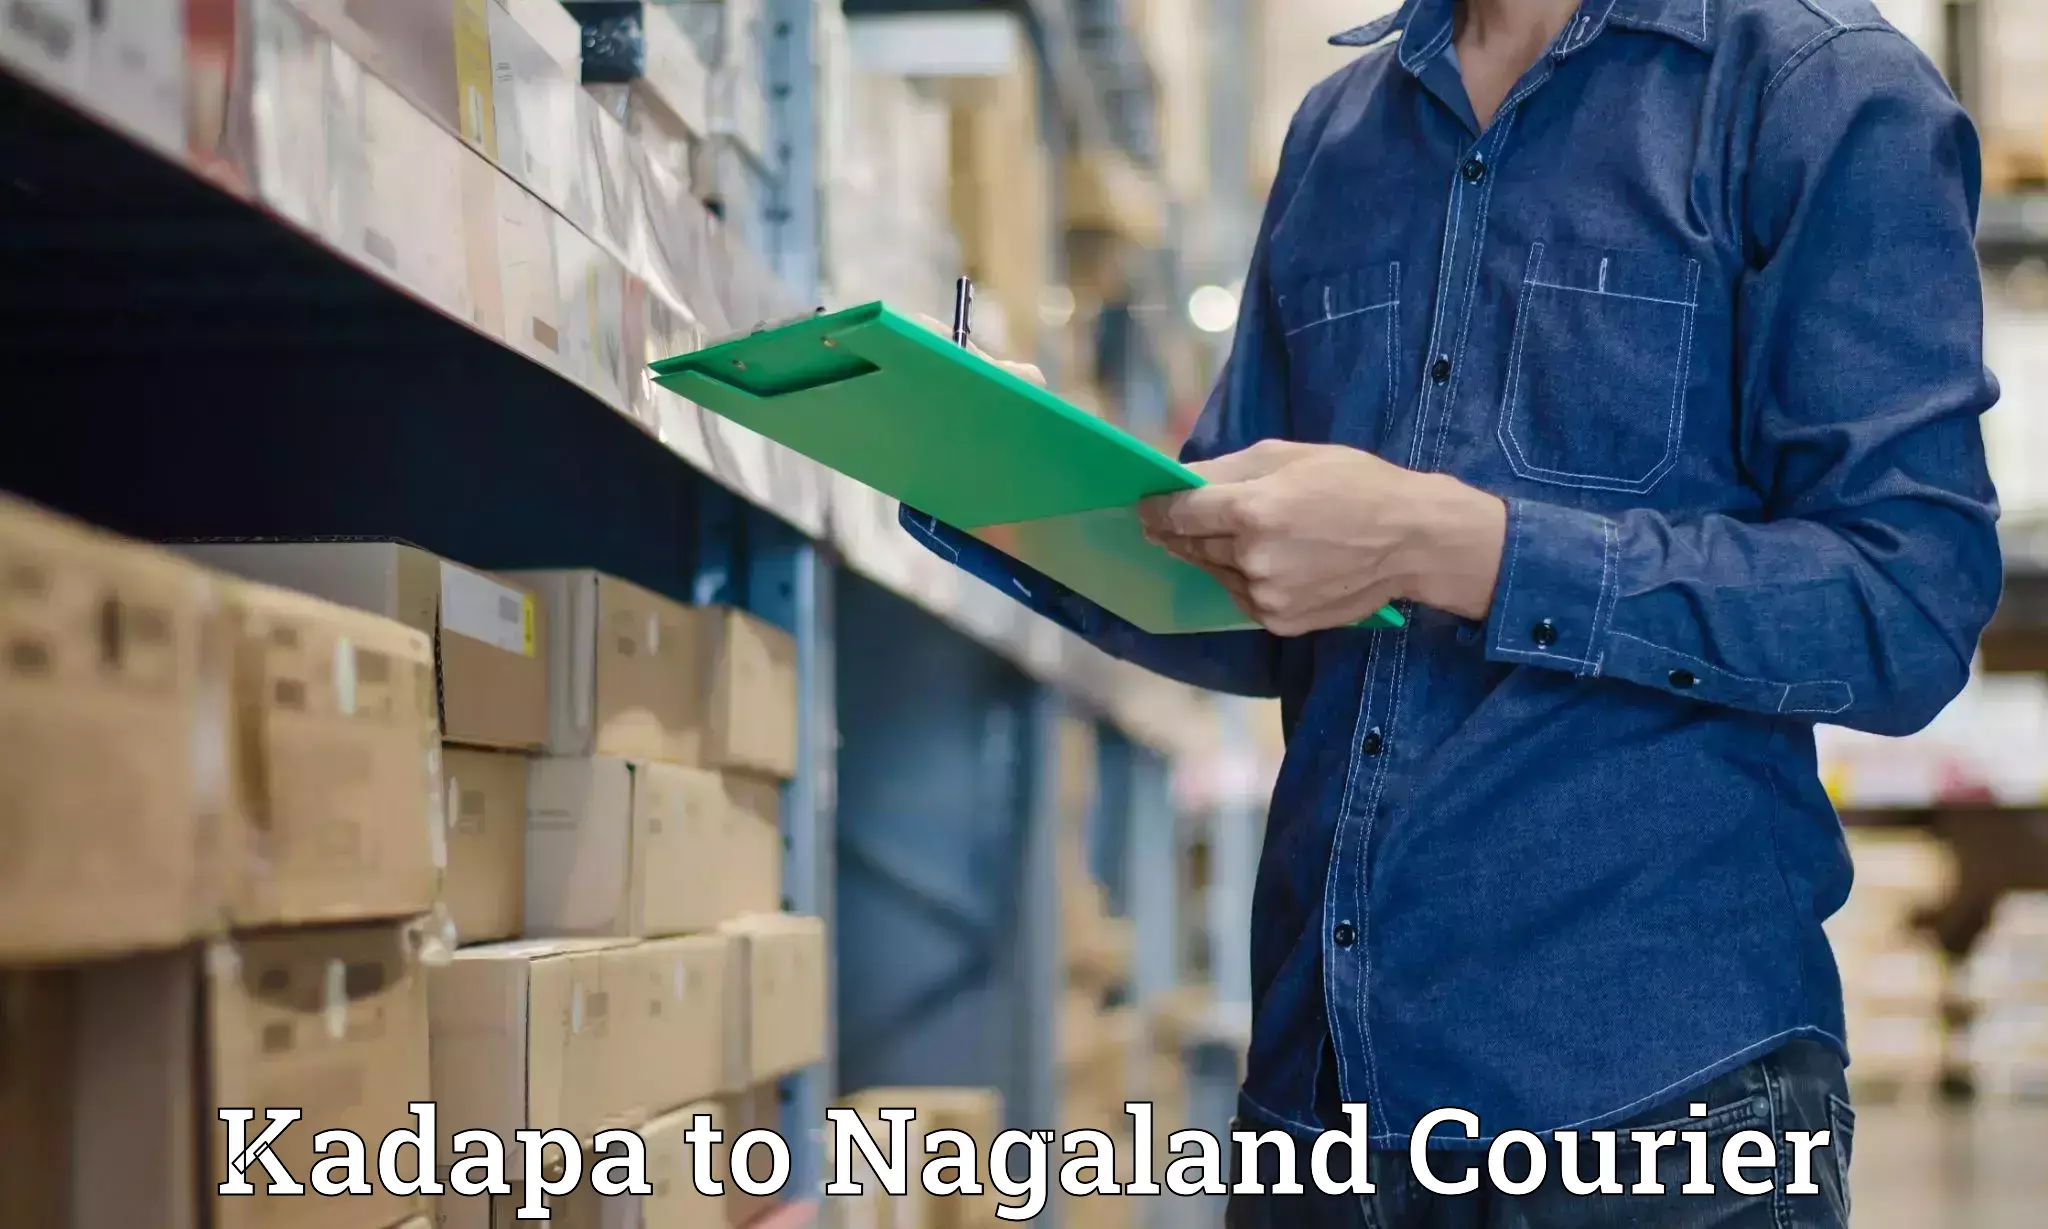 Express logistics service Kadapa to Nagaland